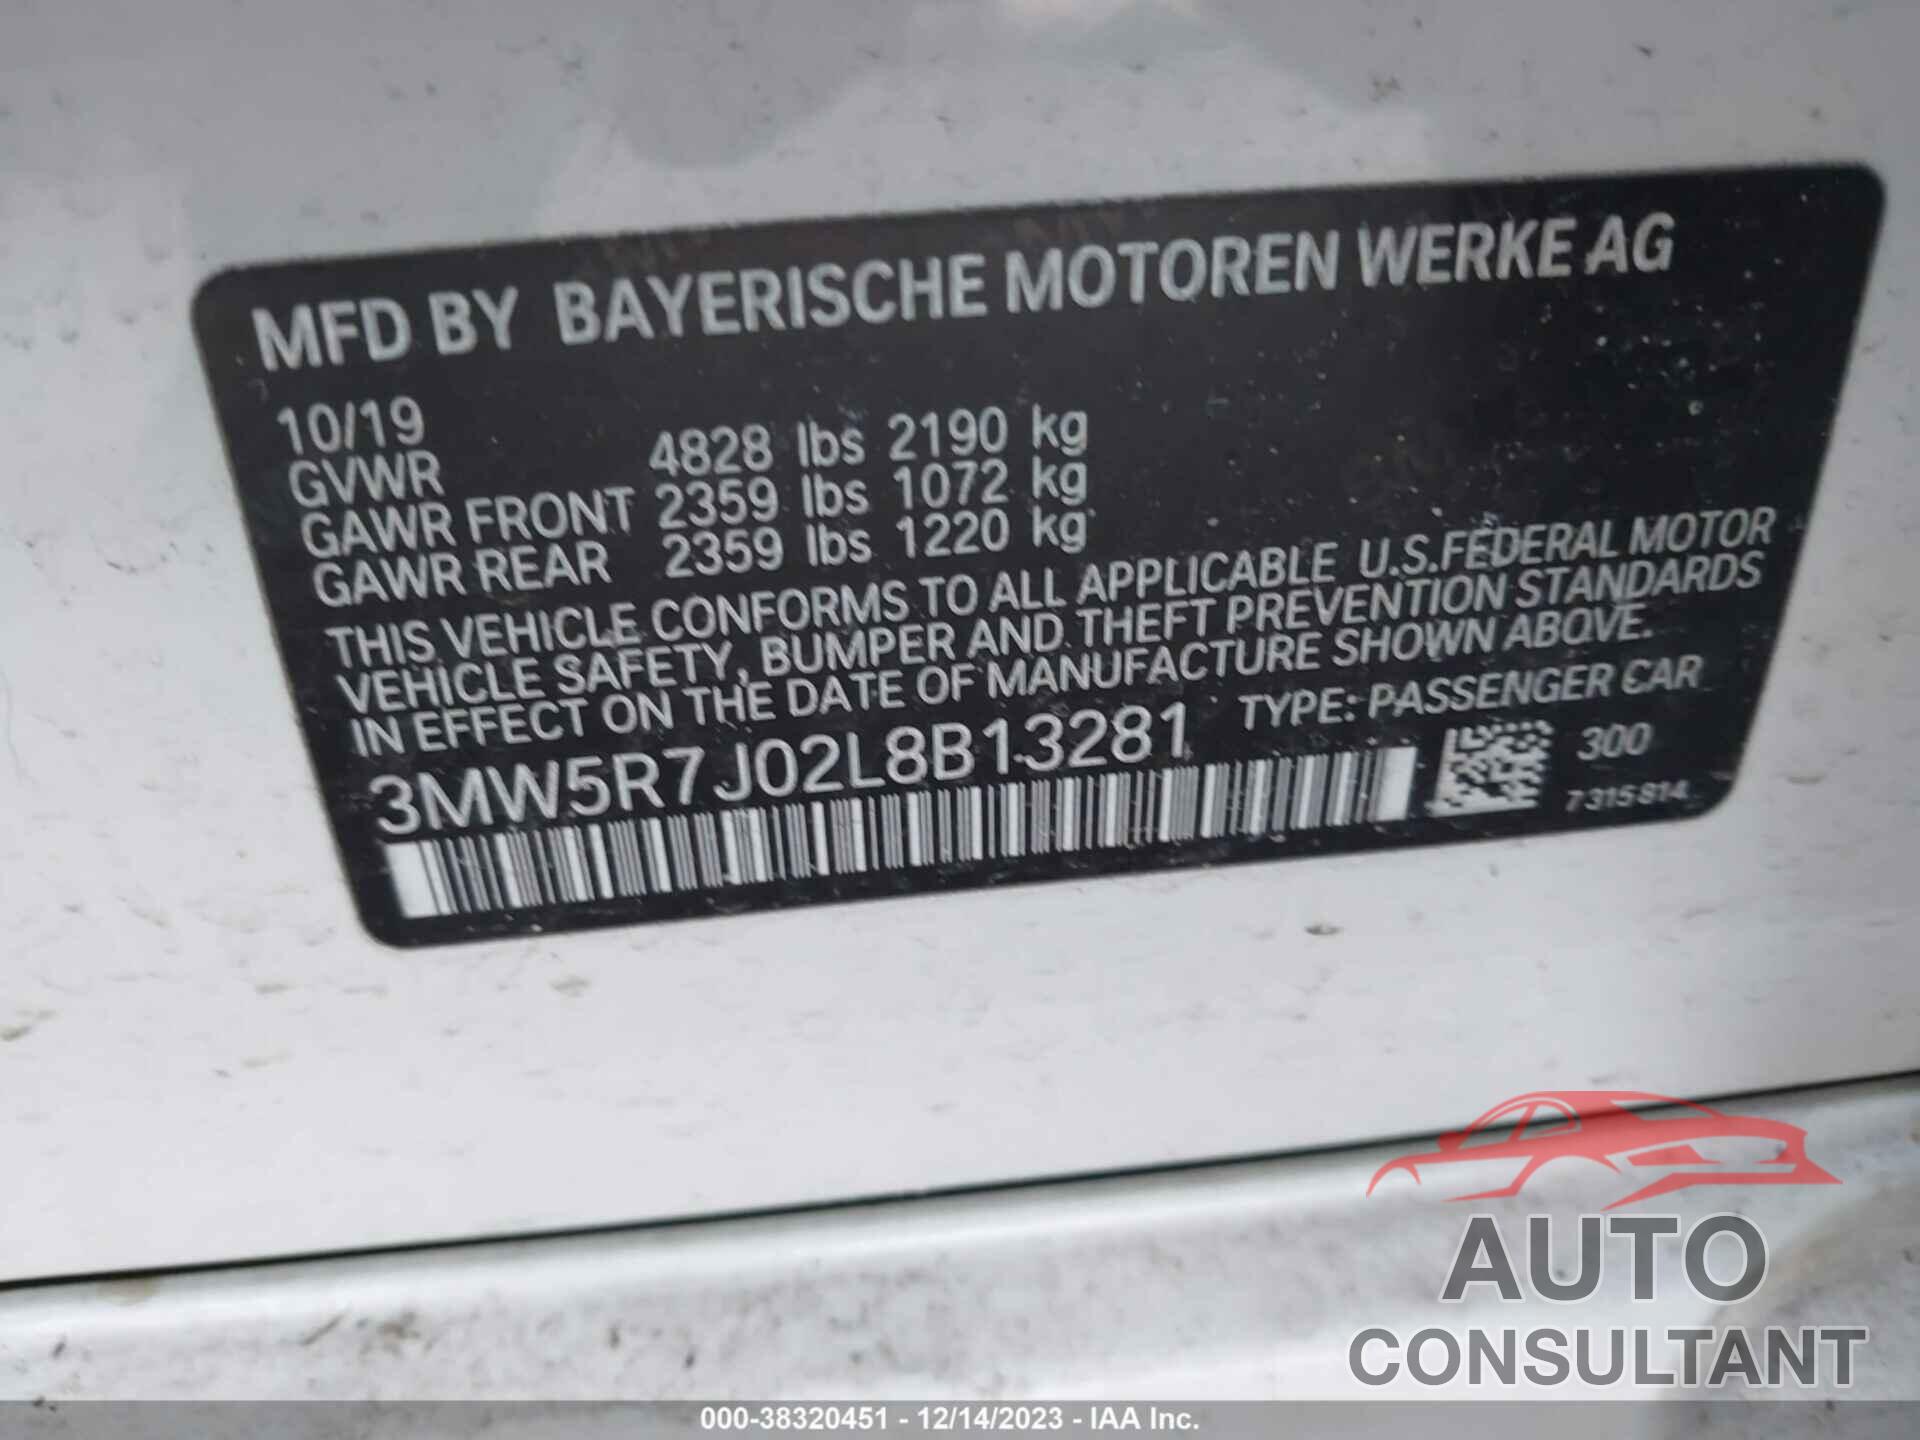 BMW 330I 2020 - 3MW5R7J02L8B13281